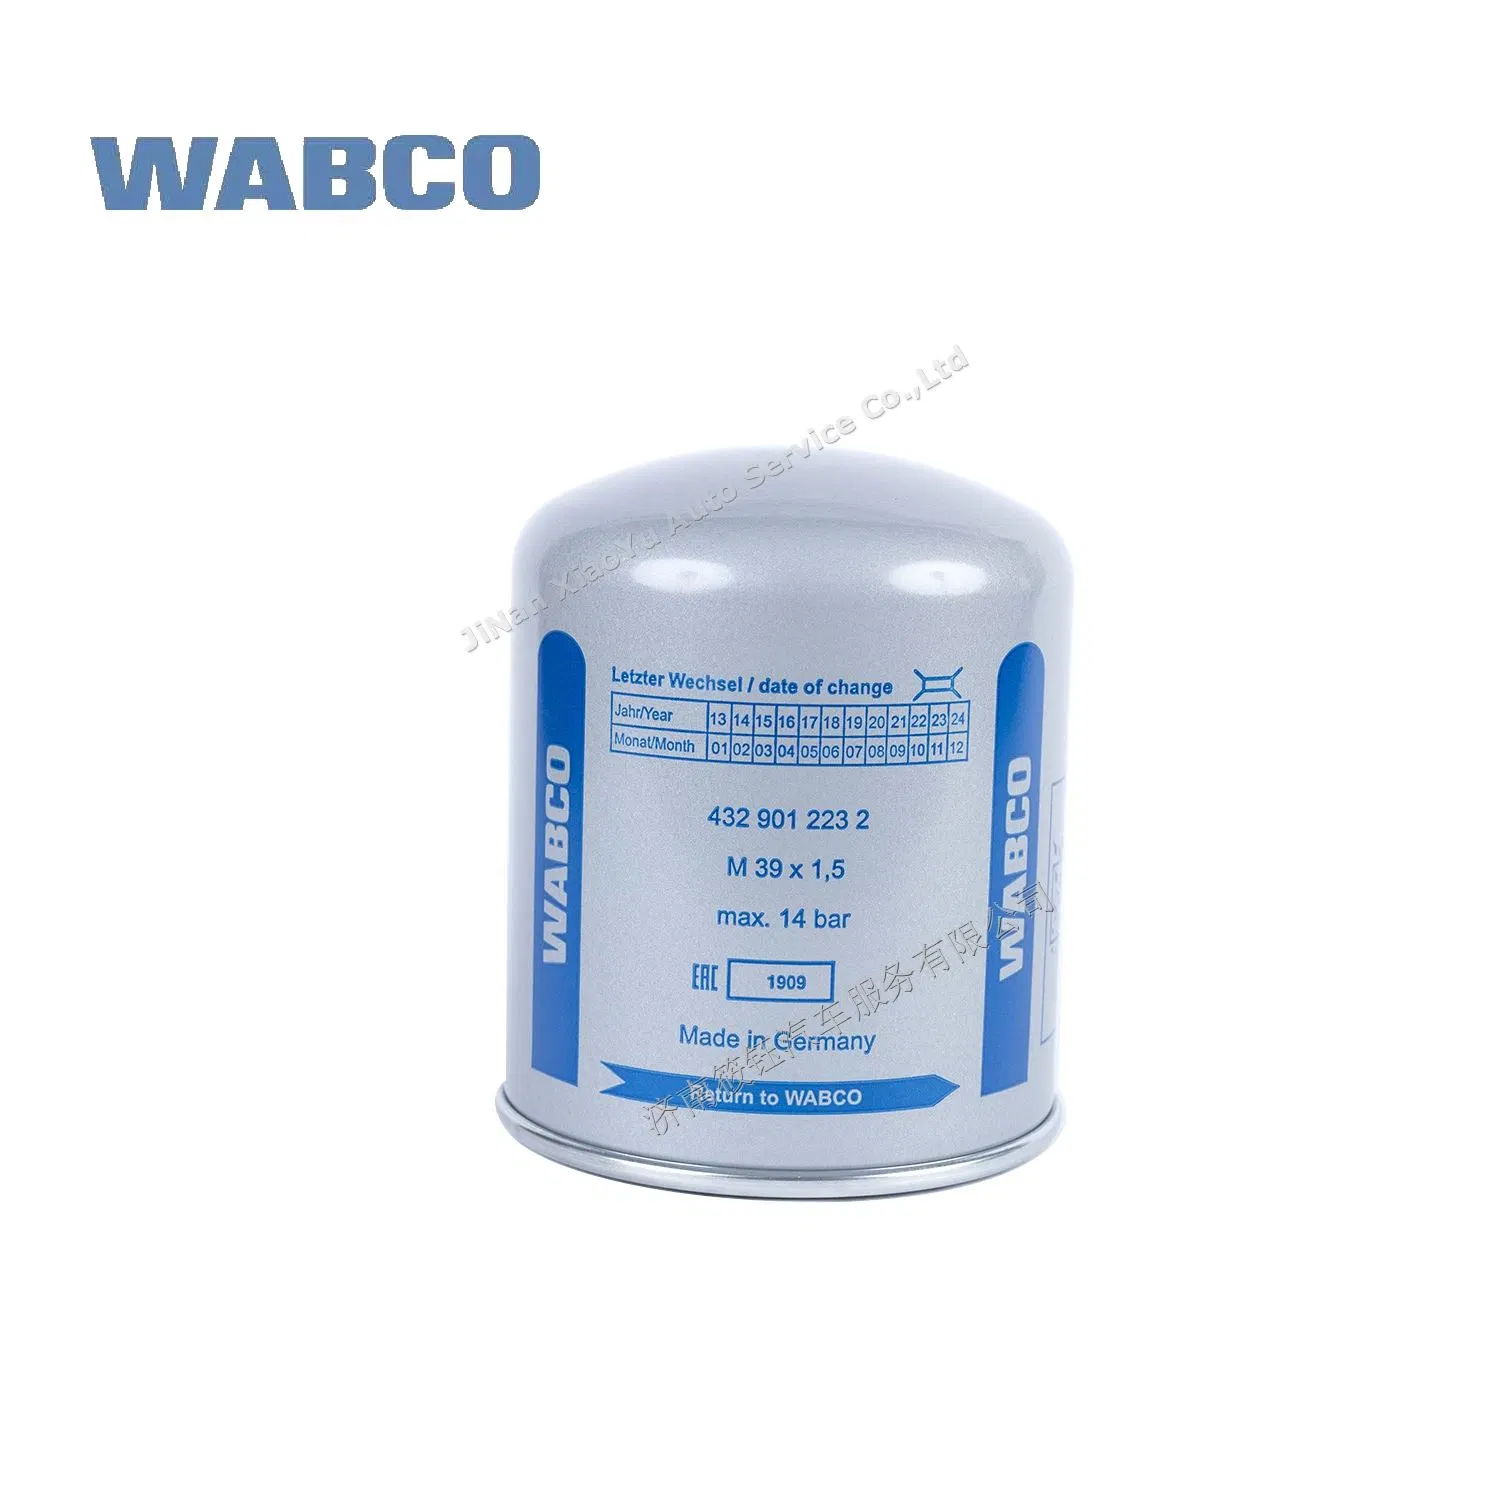 Wabco Air Filter Cartridge for Brake Valve System 4329012232 4329012222 4329012231 Be Used for Alexander Dennis Daf Demag Evobus